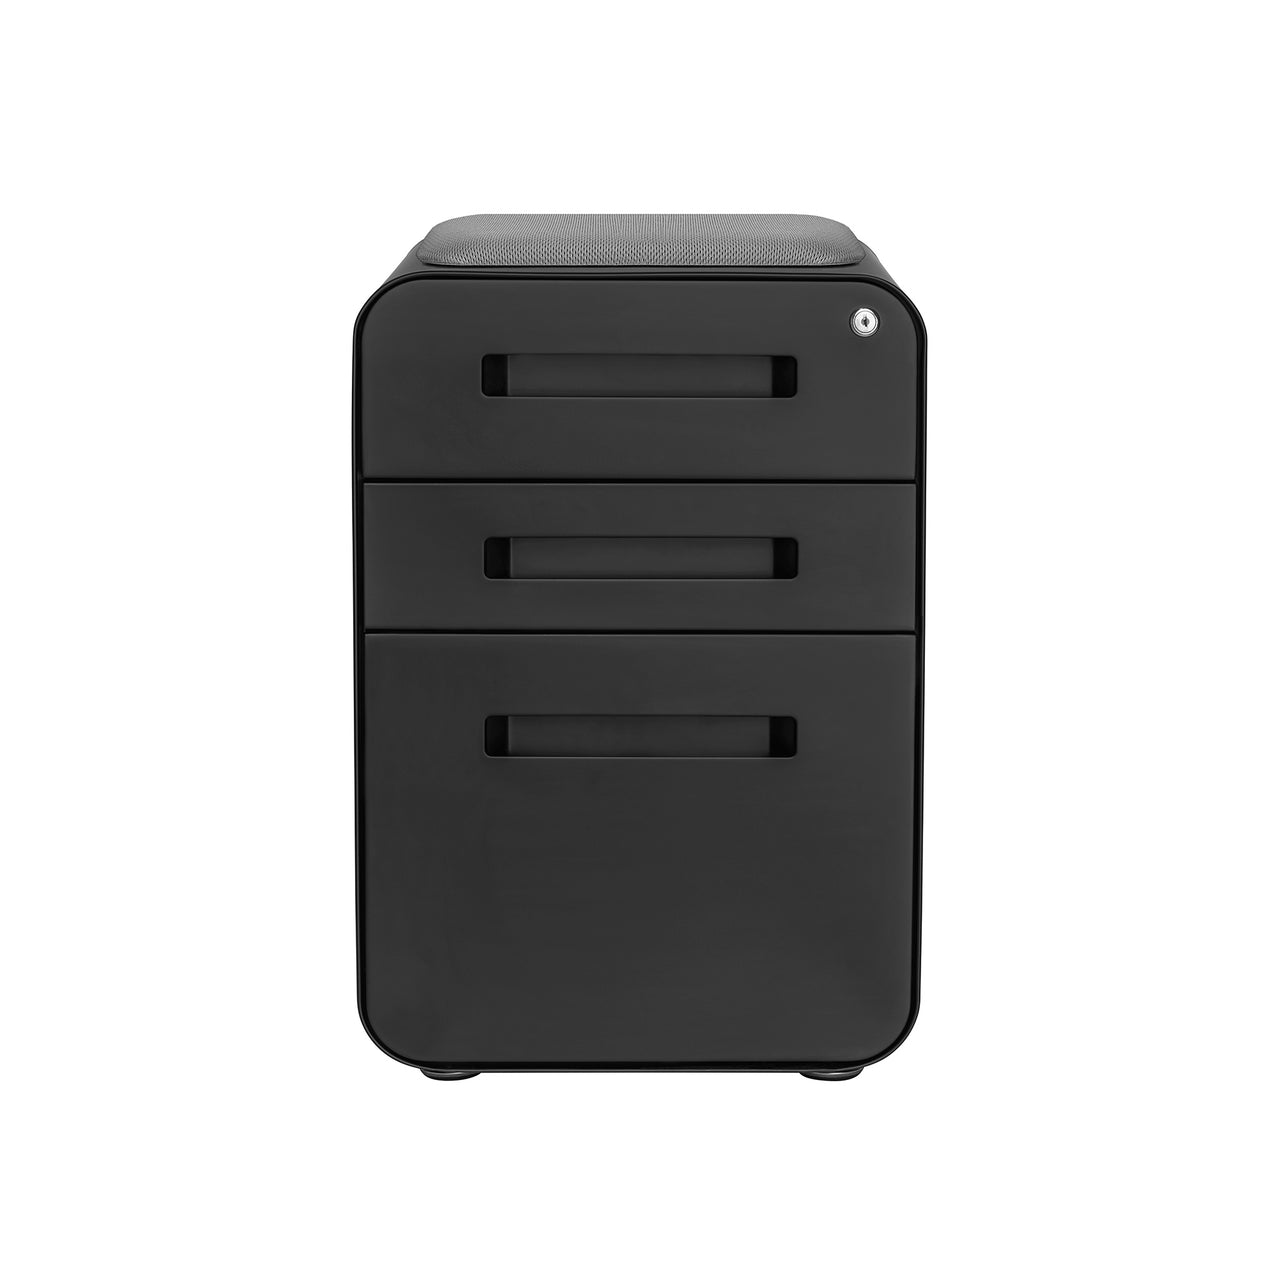 Stockpile Curve Seat File Cabinet (Black)